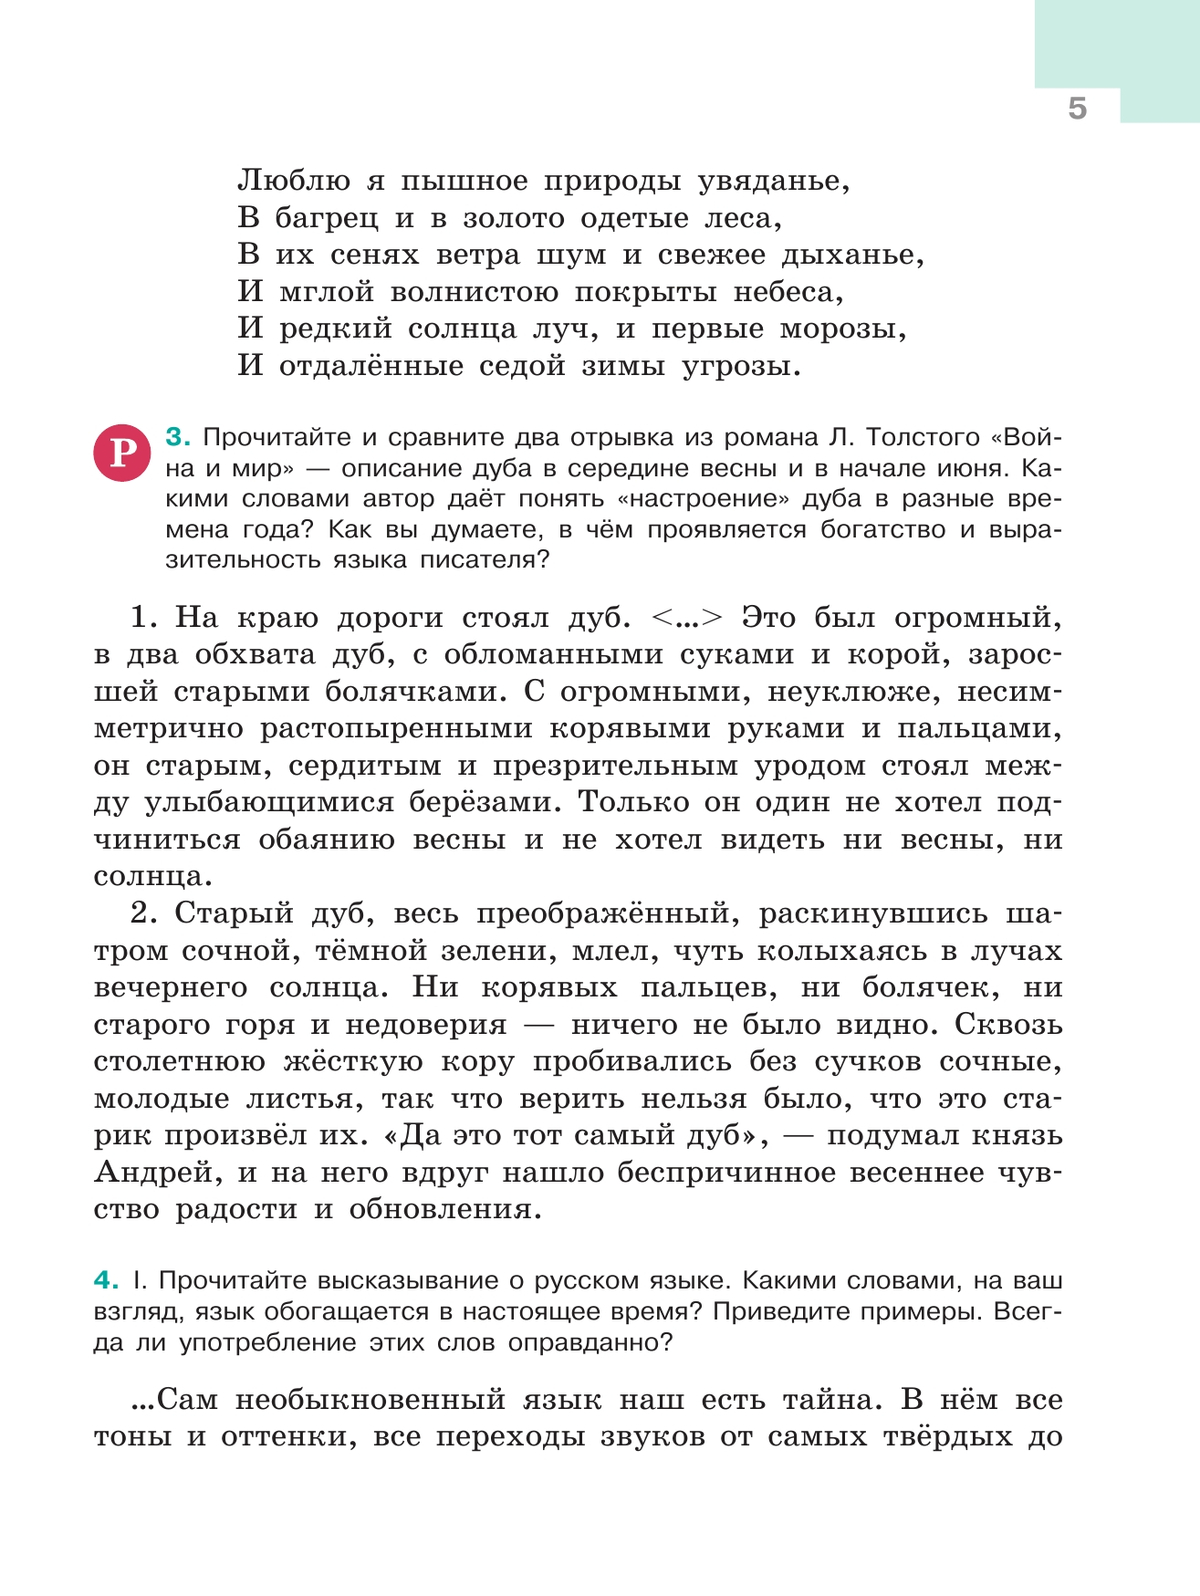 Русский язык. 5 класс. Учебник. В 2-х ч. Ч. 1 11